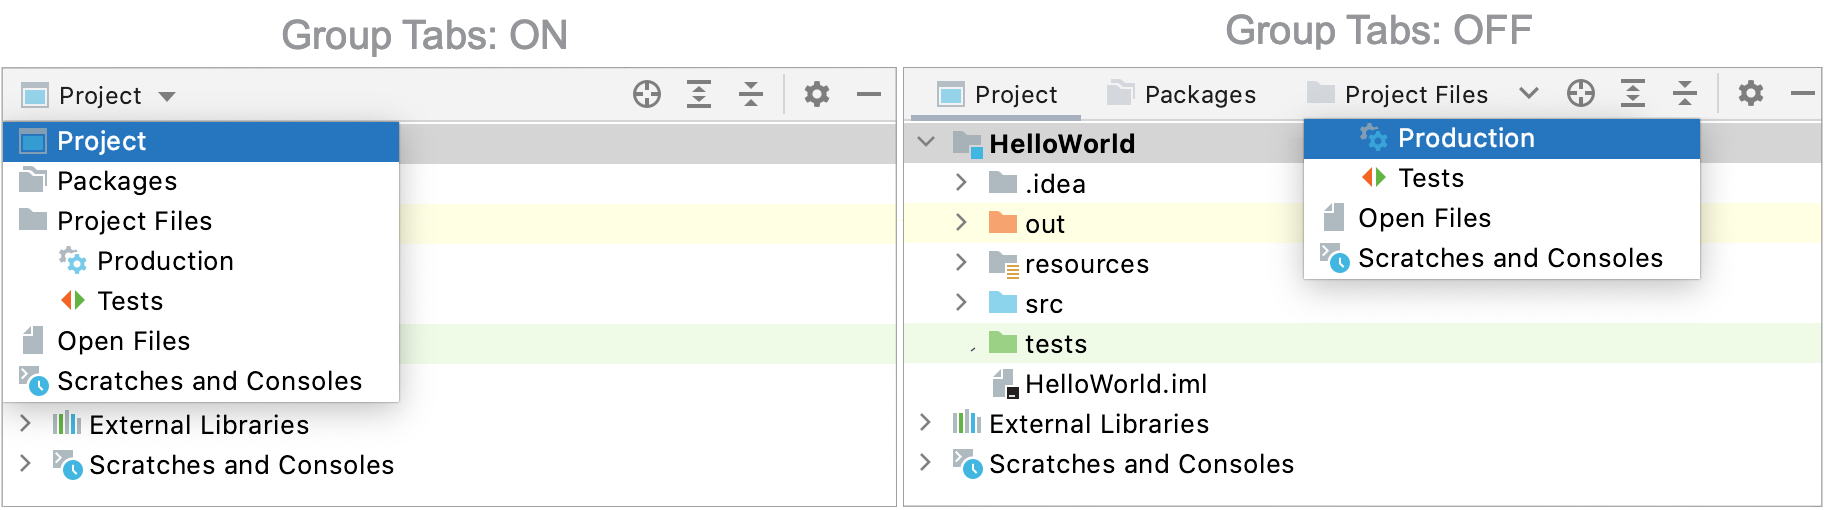 IntelliJ IDEA: choosing a view in the Project tool window